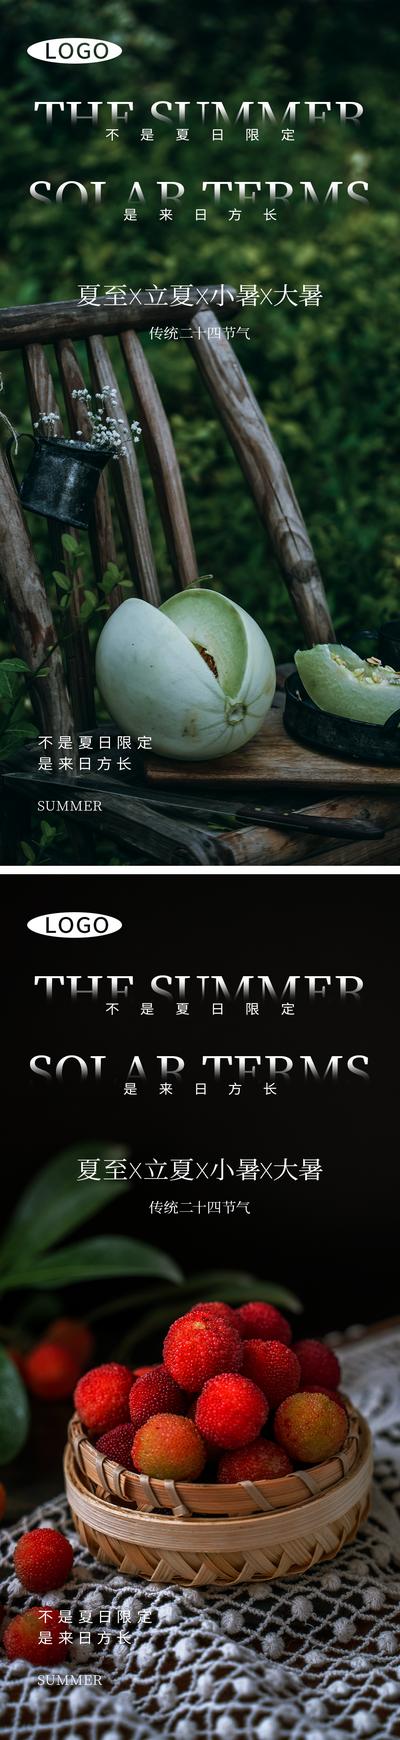 南门网 广告 海报 节气 夏至 系列 水果